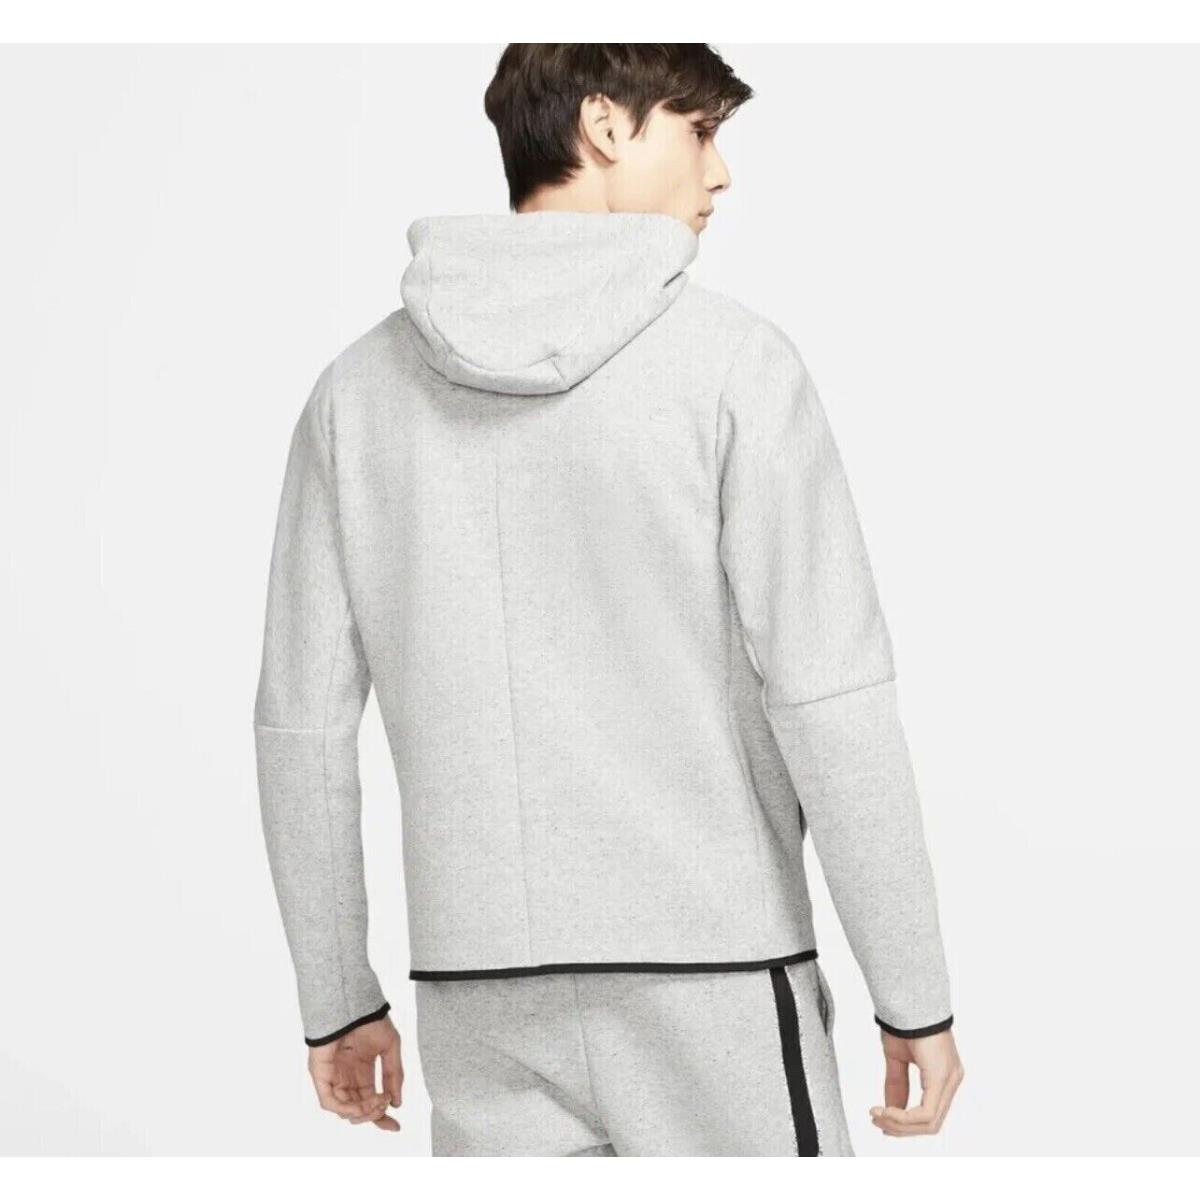 Nike Men`s Sportswear Tech Full Zip Hoodie Jacket Beige DR9150-100 Size L XL Xxl